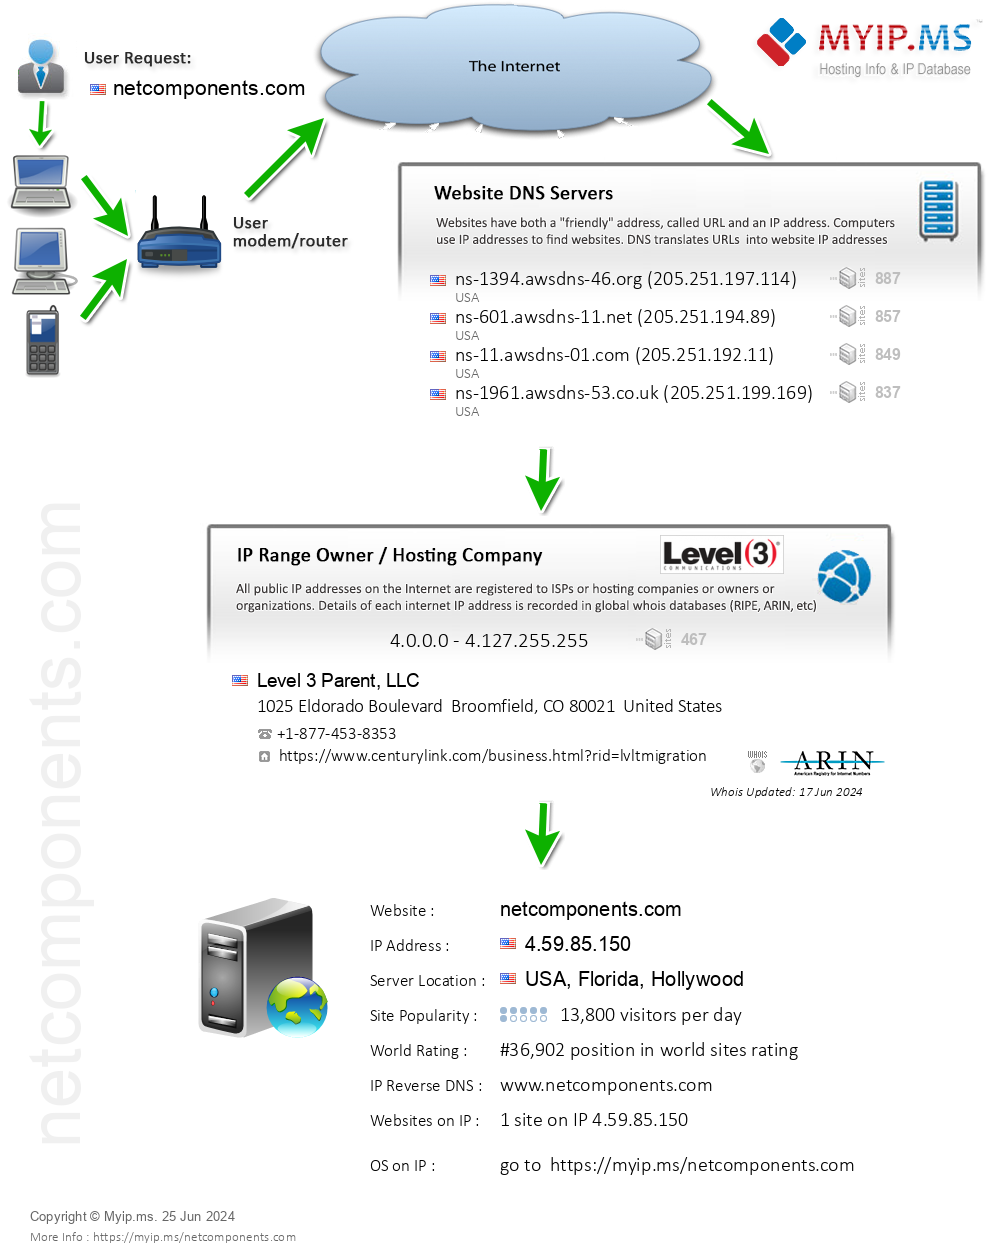 Netcomponents.com - Website Hosting Visual IP Diagram